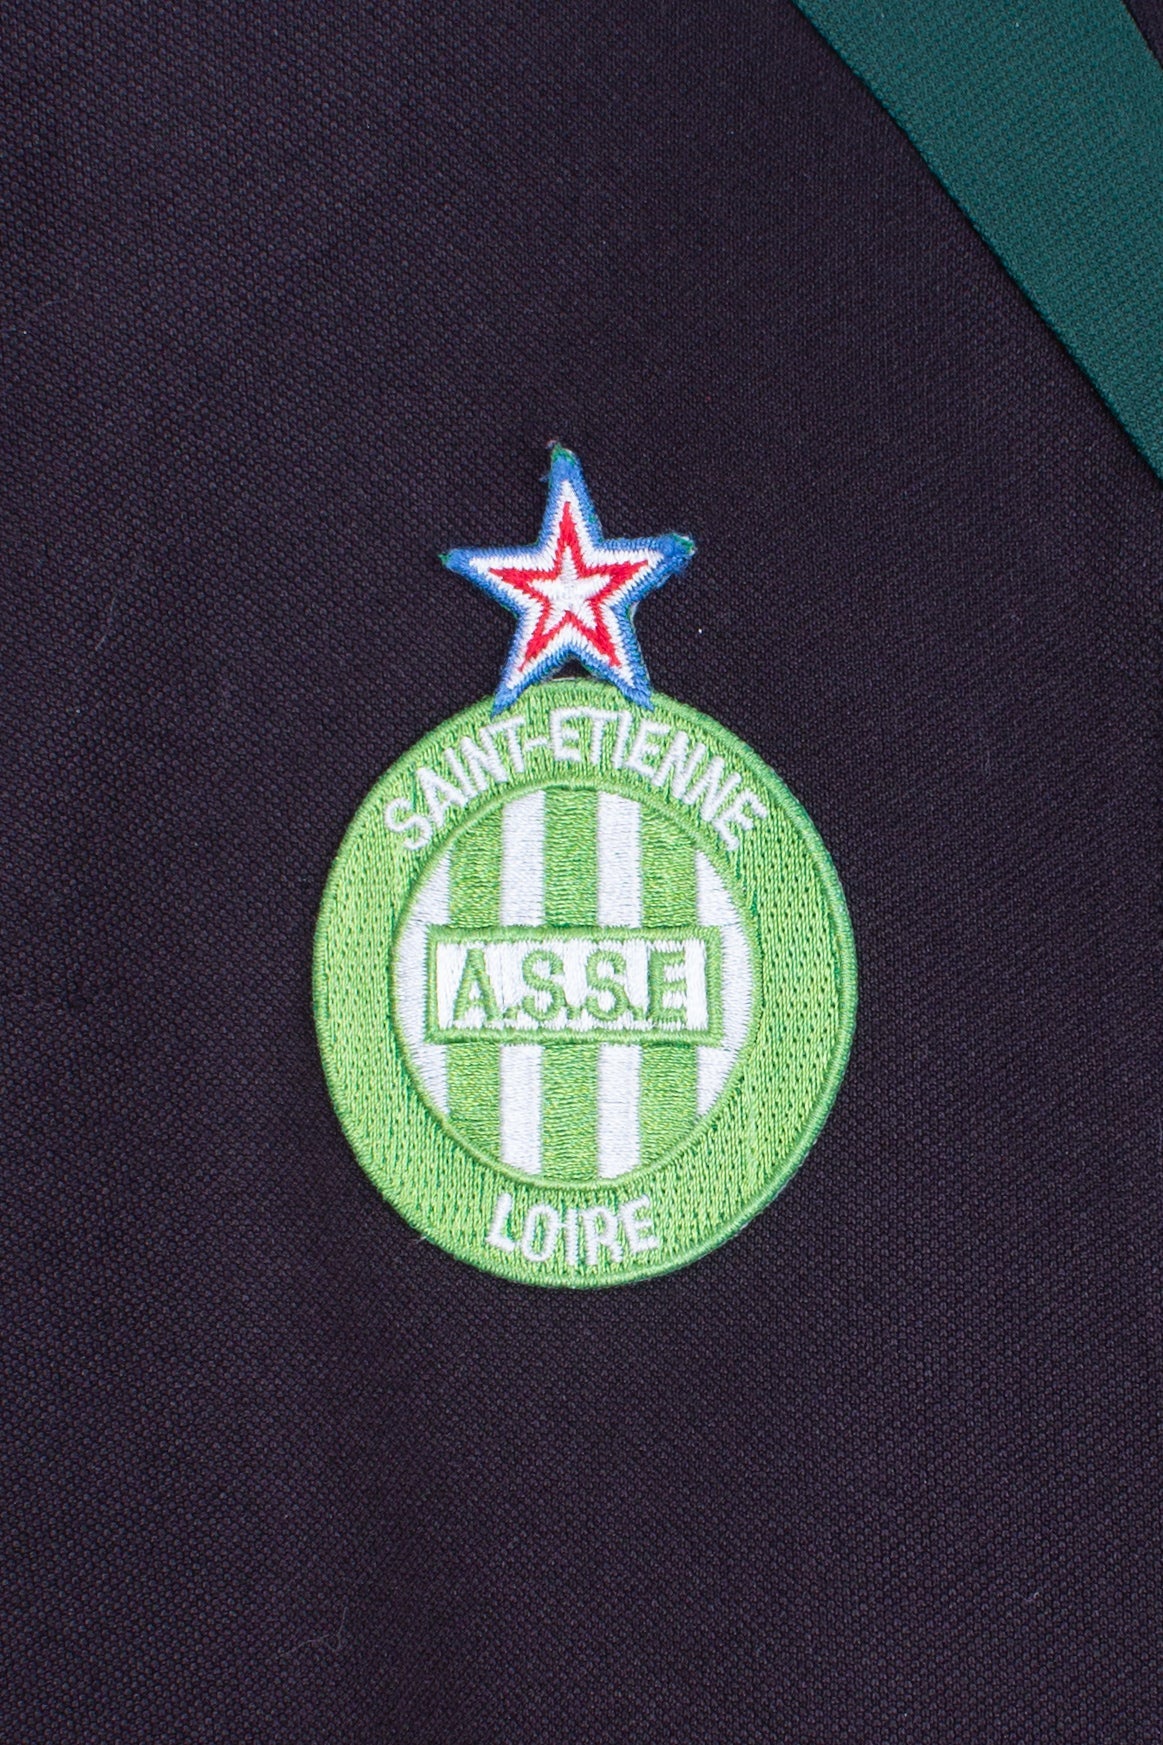 St. Etienne 2000's Training Jacket ( L)